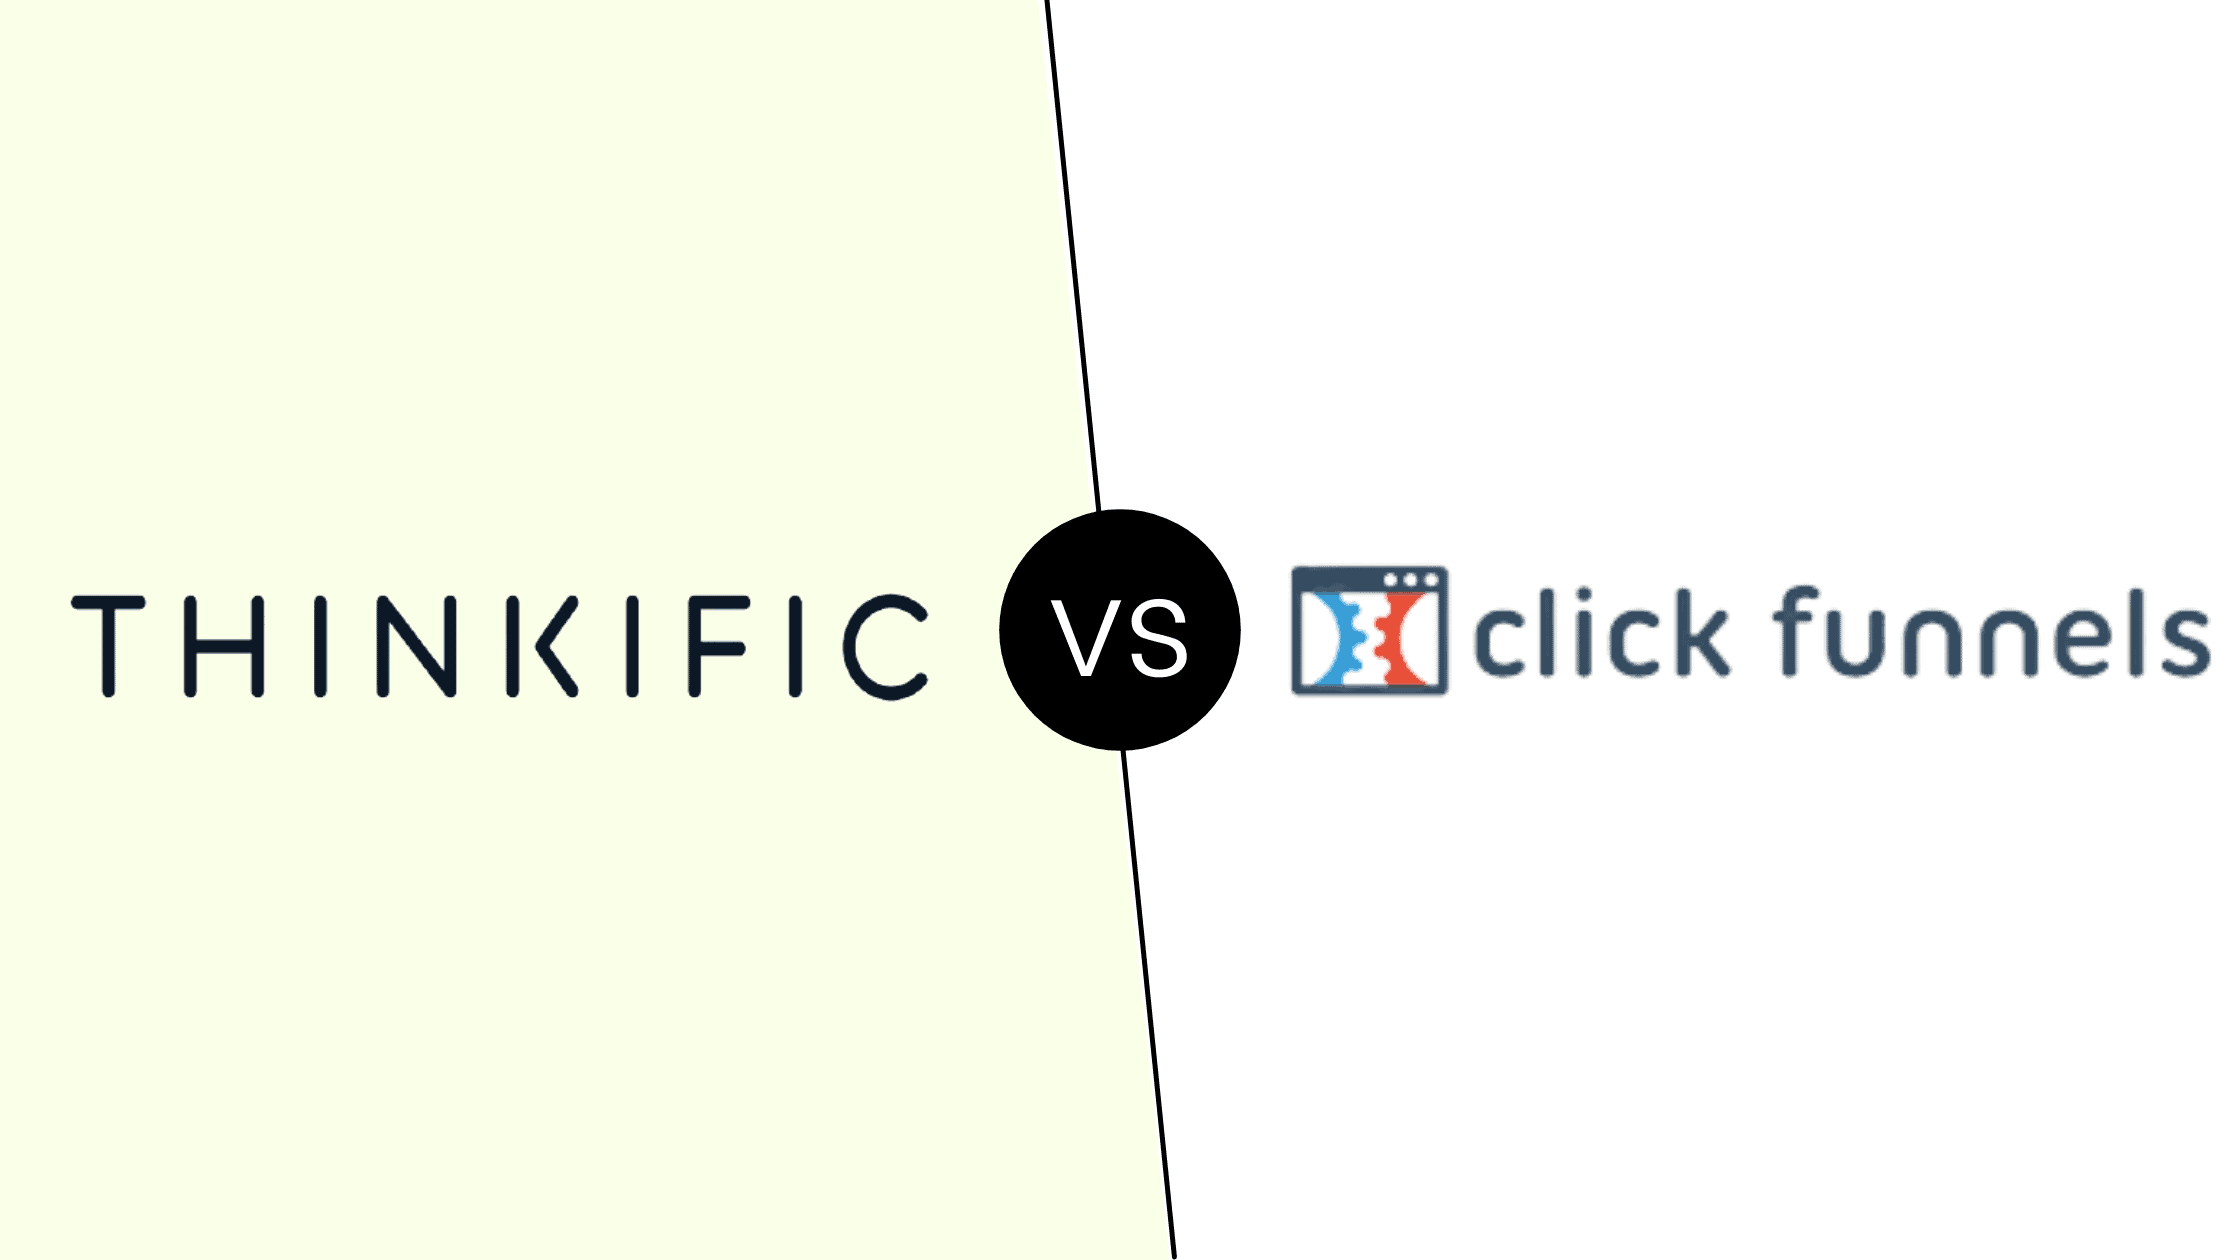 Thinkific vs Click funnels